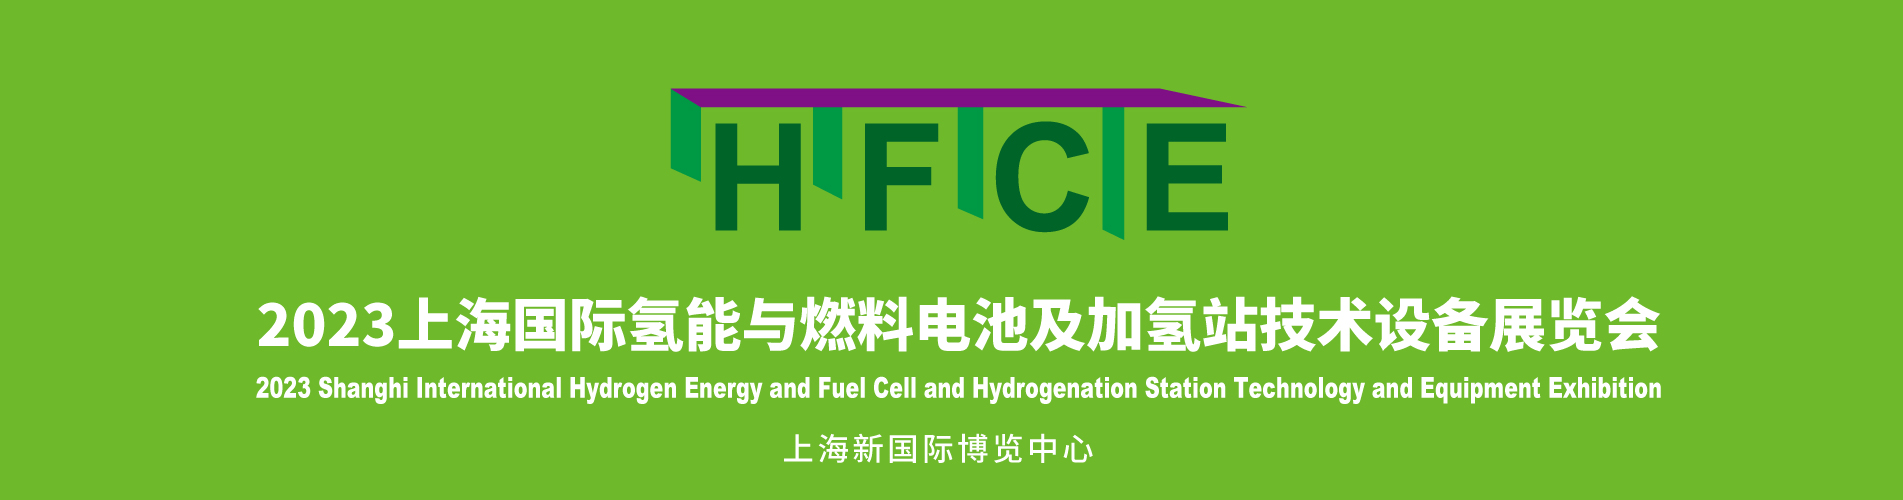 2023上海国际氢能与燃烧电池及加氢站技术设备展览会